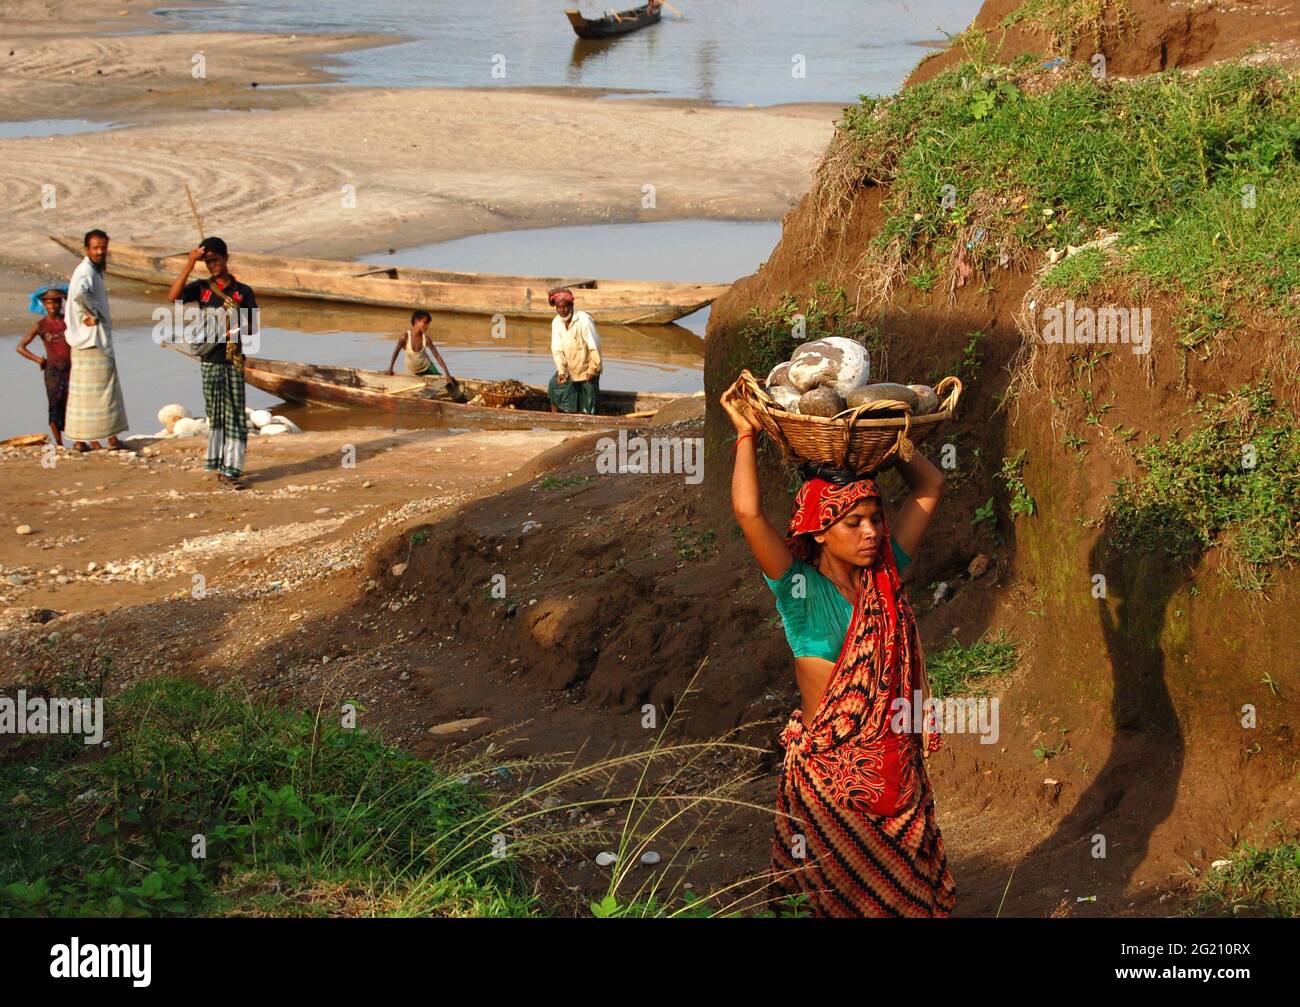 Mujer que transporta arena de río desde el río Meghna, Bangladesh, que se utilizará para la construcción de edificios urbanos. Para fines de construcción, se prefiere arena de río baja en salinidad. Sin embargo, se trata de un negocio grande y a menudo no regulado en manos de sindicatos políticos. Ellos extraen voluntariamente la arena, destruyendo la vida acuática mientras explotan a las mujeres para llevar a cabo el trabajo a salarios marginales. Bangladesh. Foto de stock